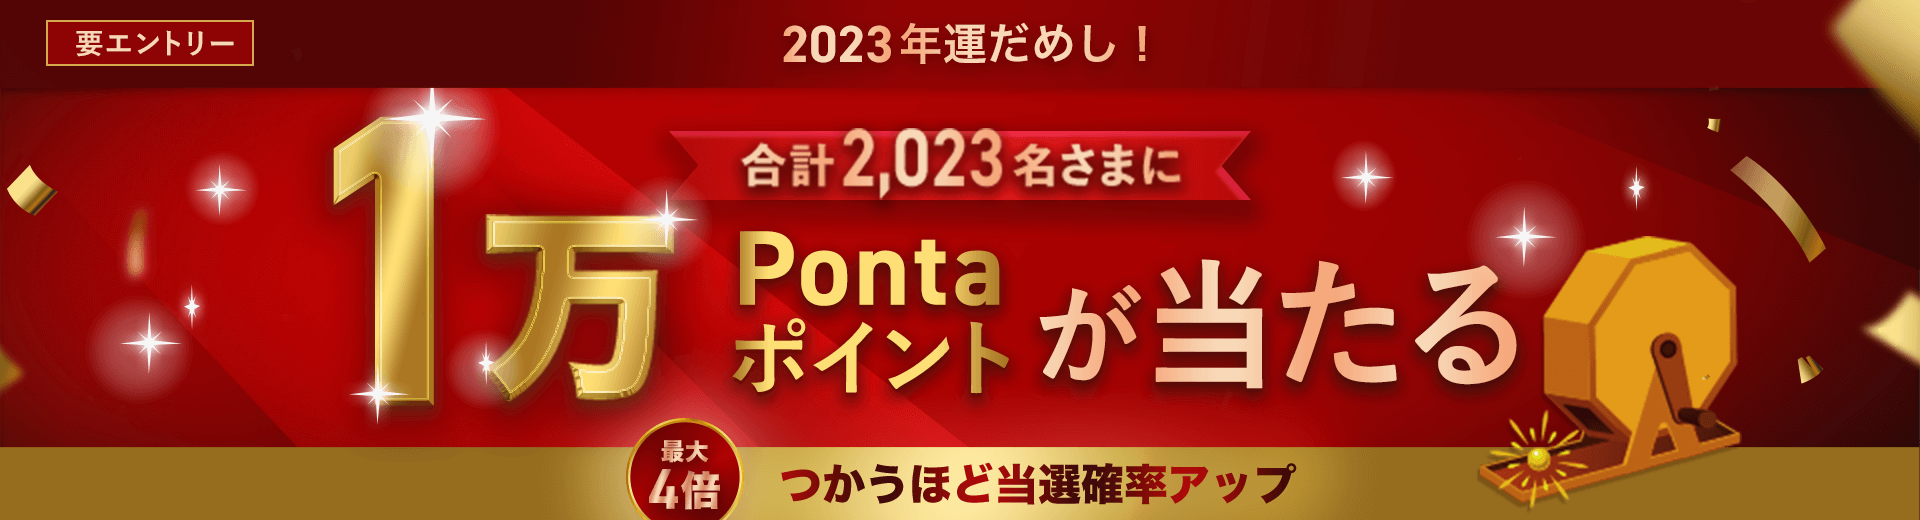 要エントリー 2023年運だめし！ 合計2,023名さまに1万Pontaポイントが当たる 最大4倍 つかうほど当選確率アップ